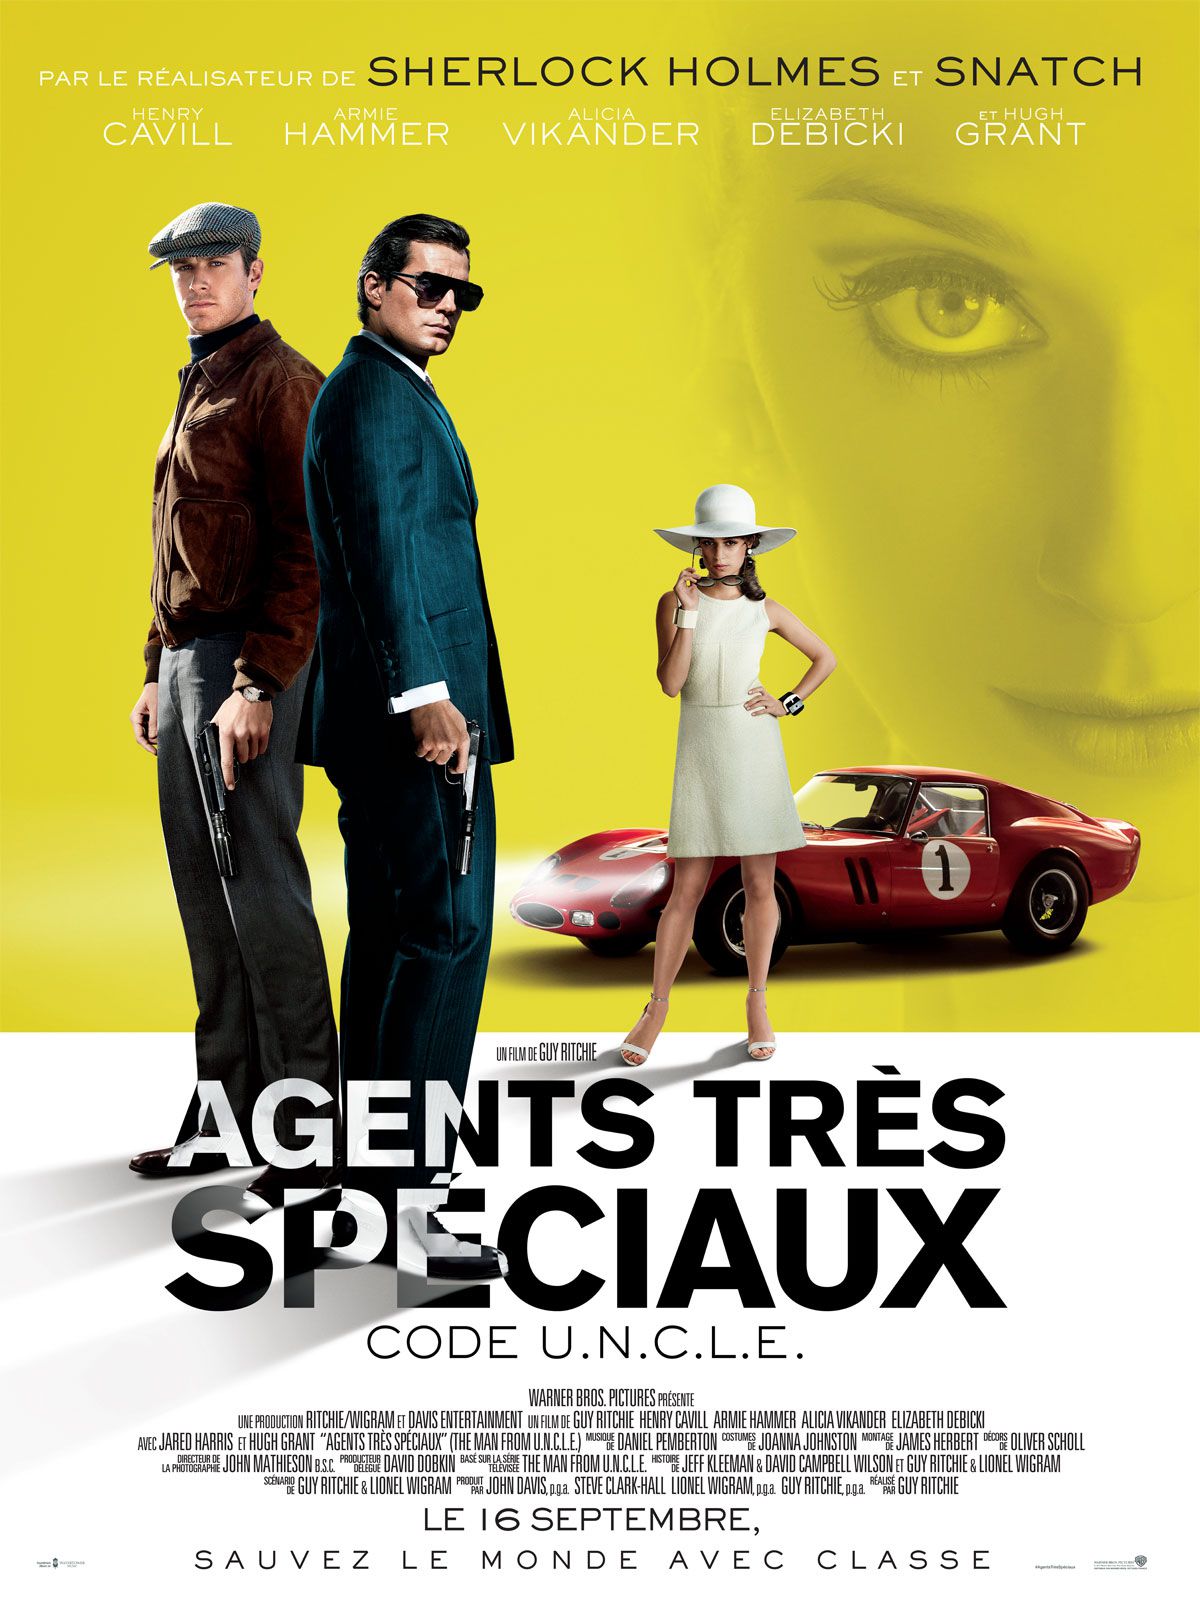 Film Agents très spéciaux - Code U.N.C.L.E. - Film (2015)